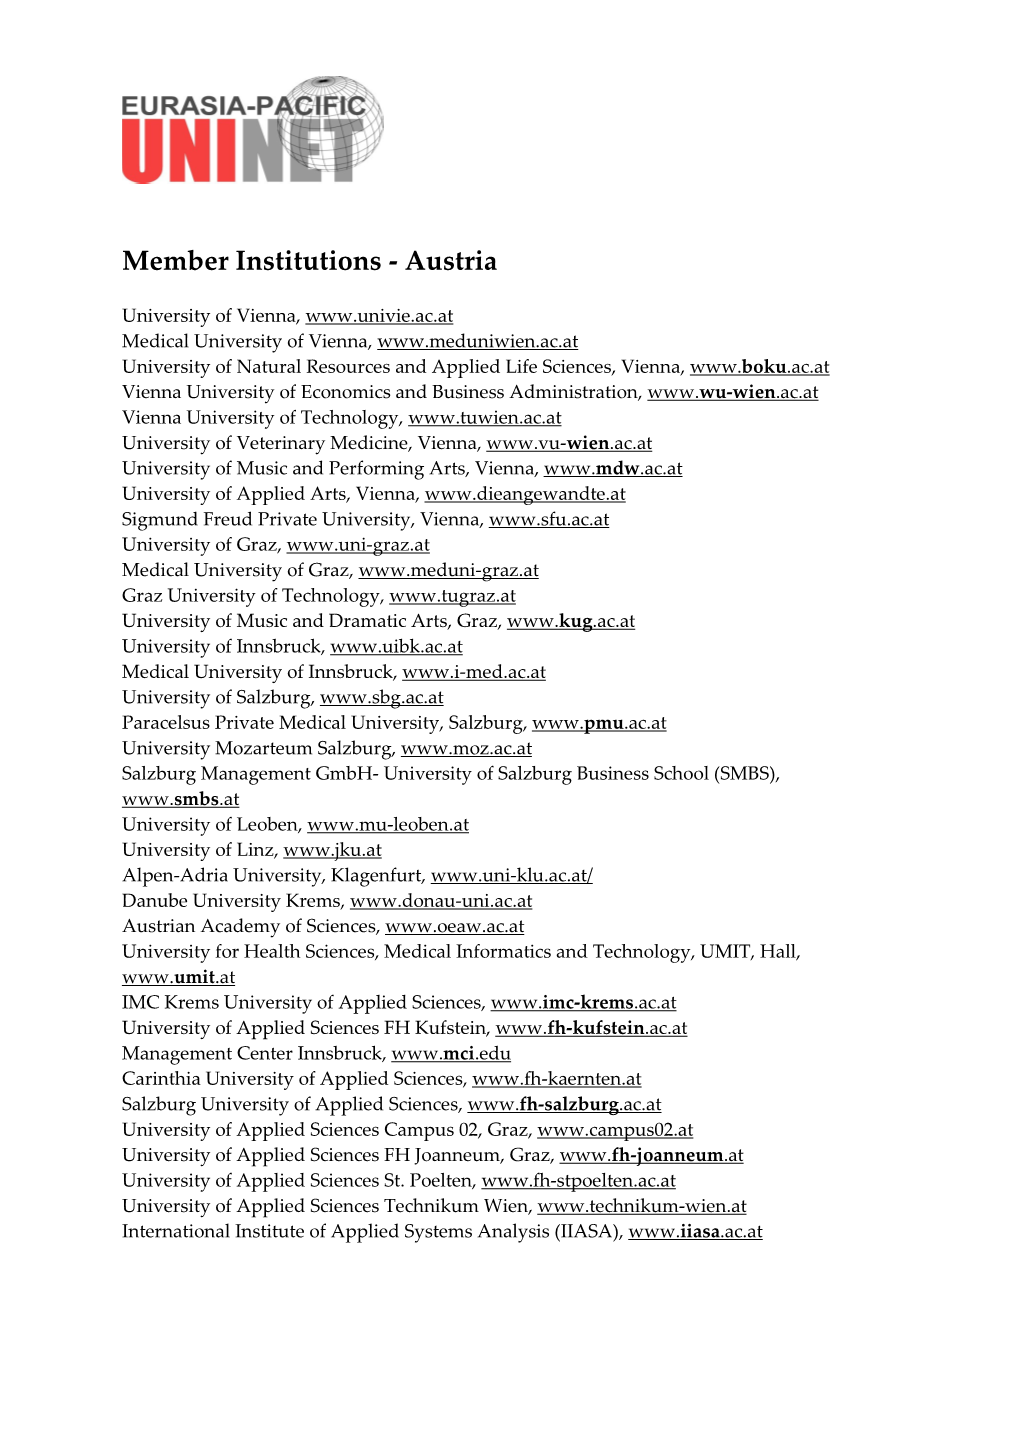 EPU Member Institutions Austria